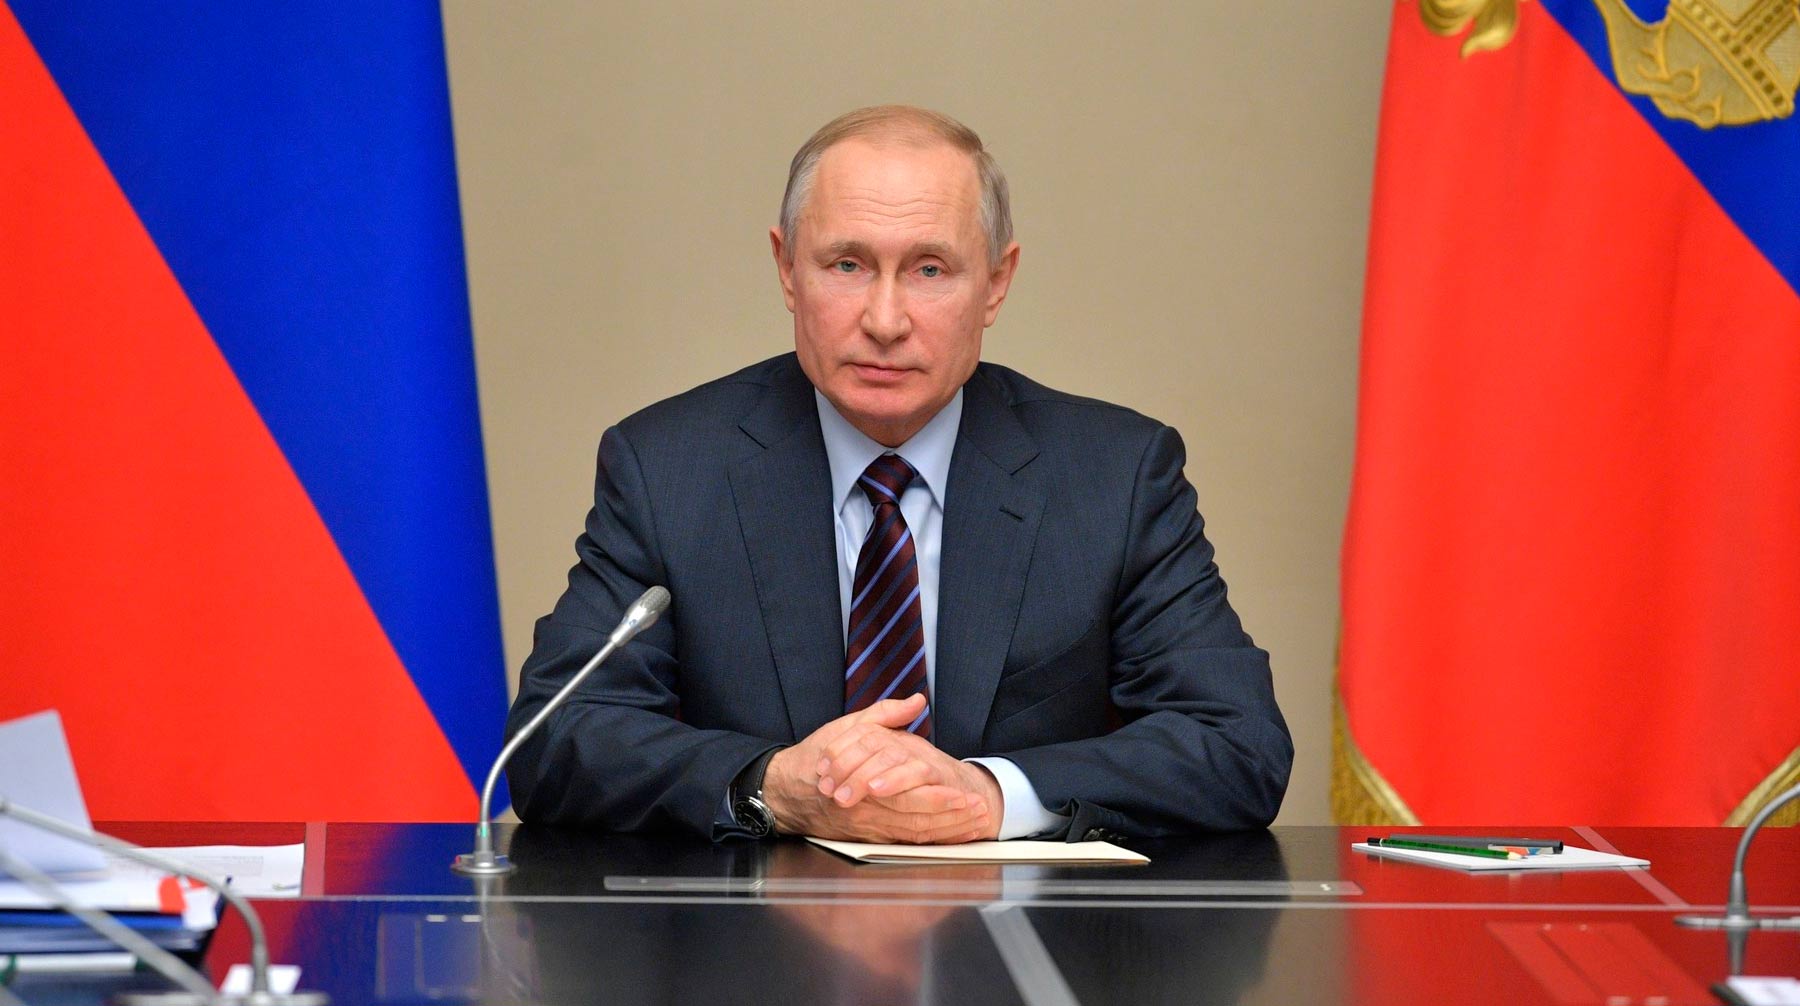 Президент также поддержал идею продления моратория на плановые проверки малого и среднего бизнеса Фото: © Global Look Press / Kremlin Pool